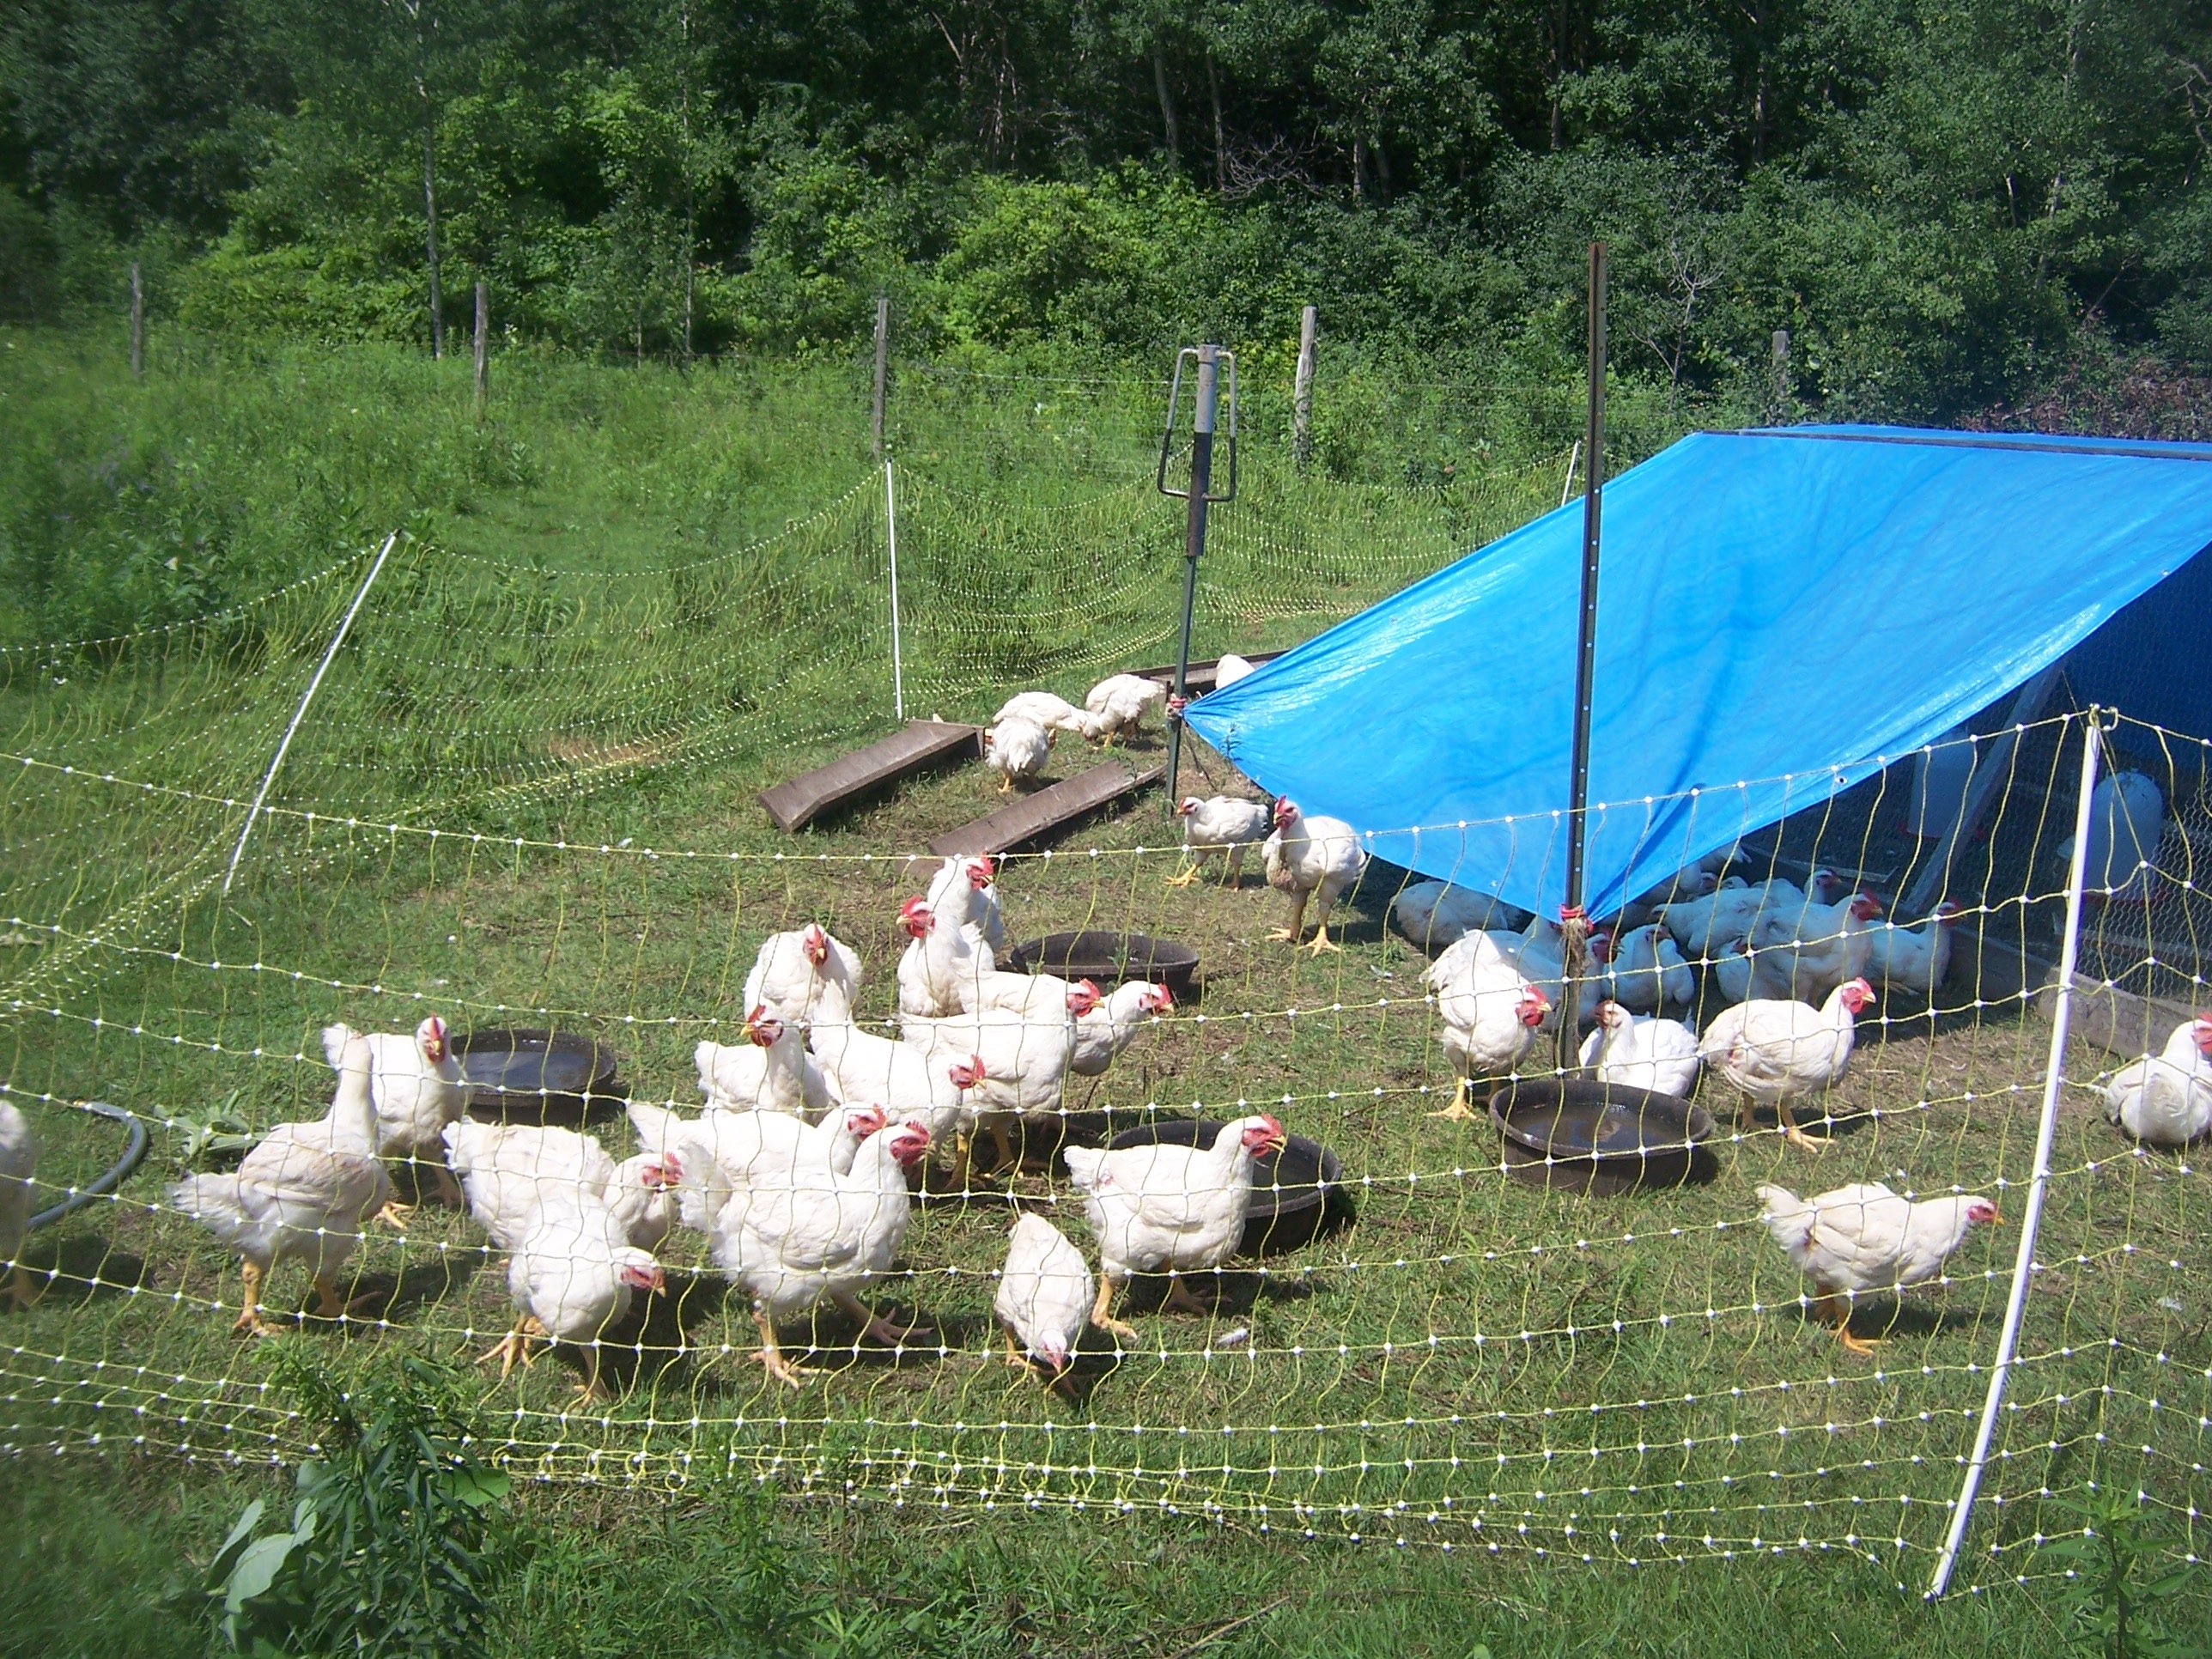 Raising chickens on pasture